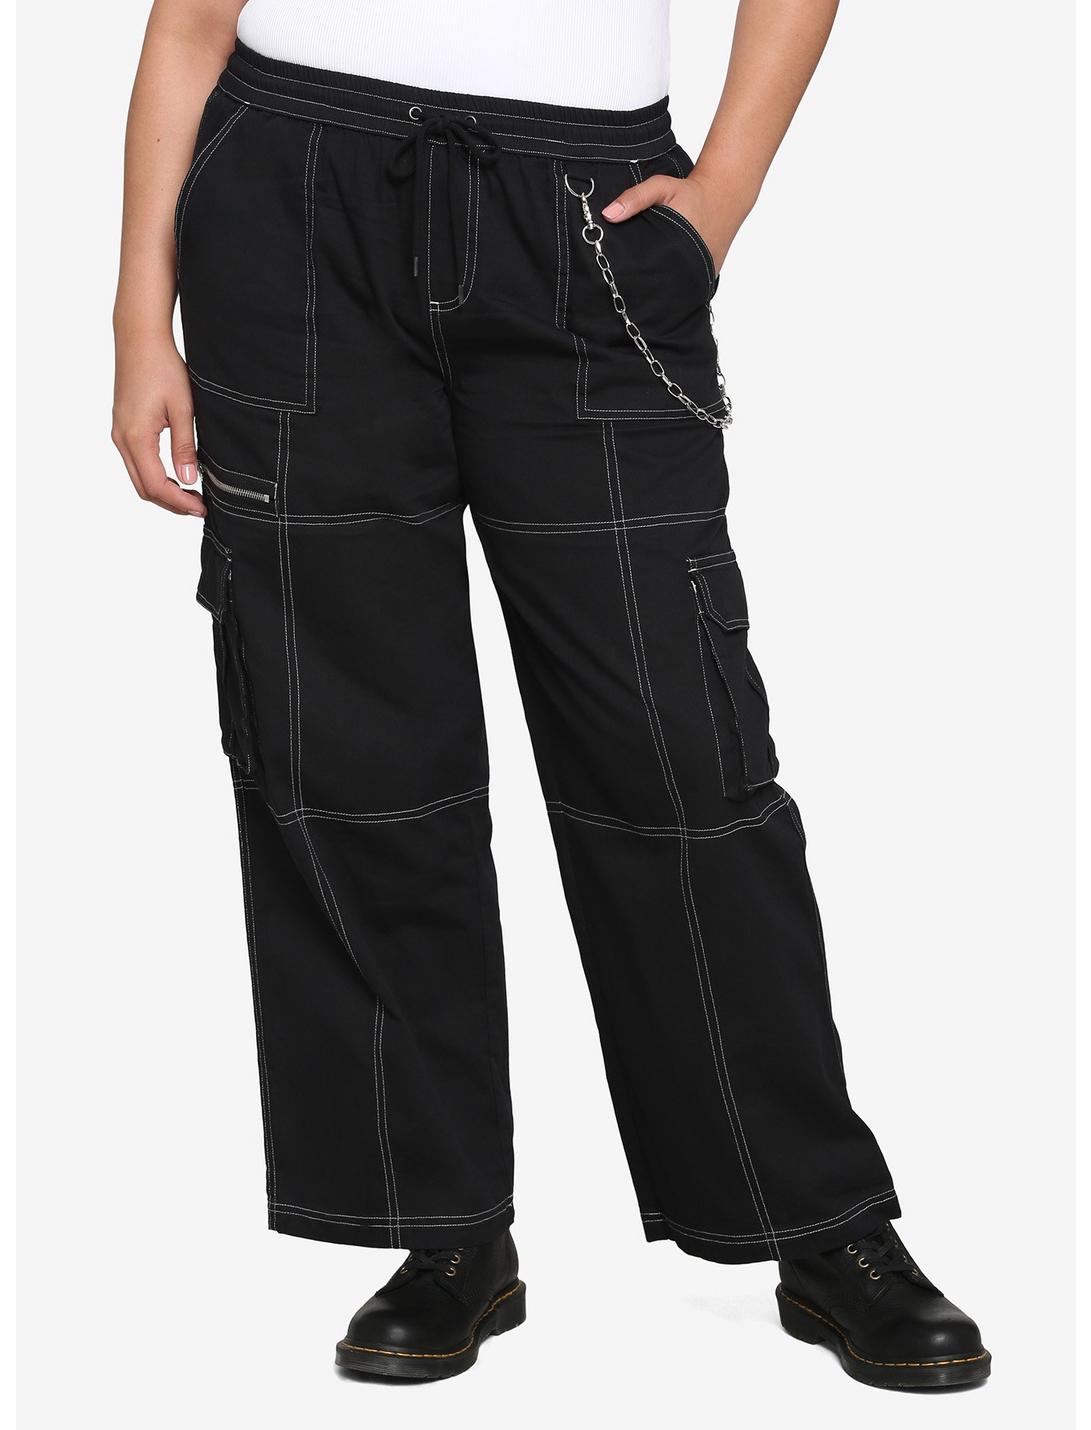 Black & White Stitch Chain Carpenter Pants Plus Size, BLACK  WHITE, hi-res